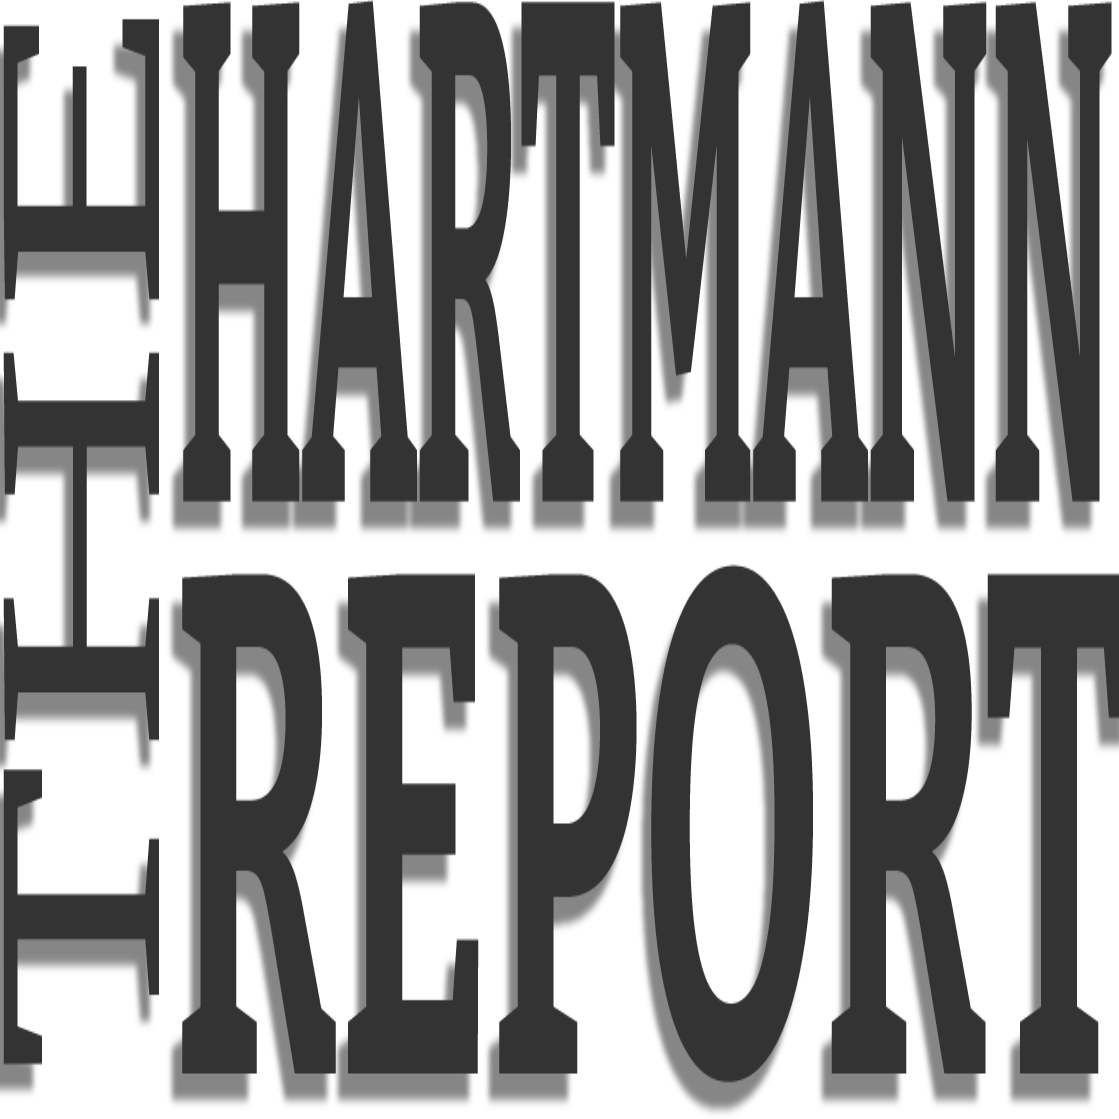 The Hartmann Report